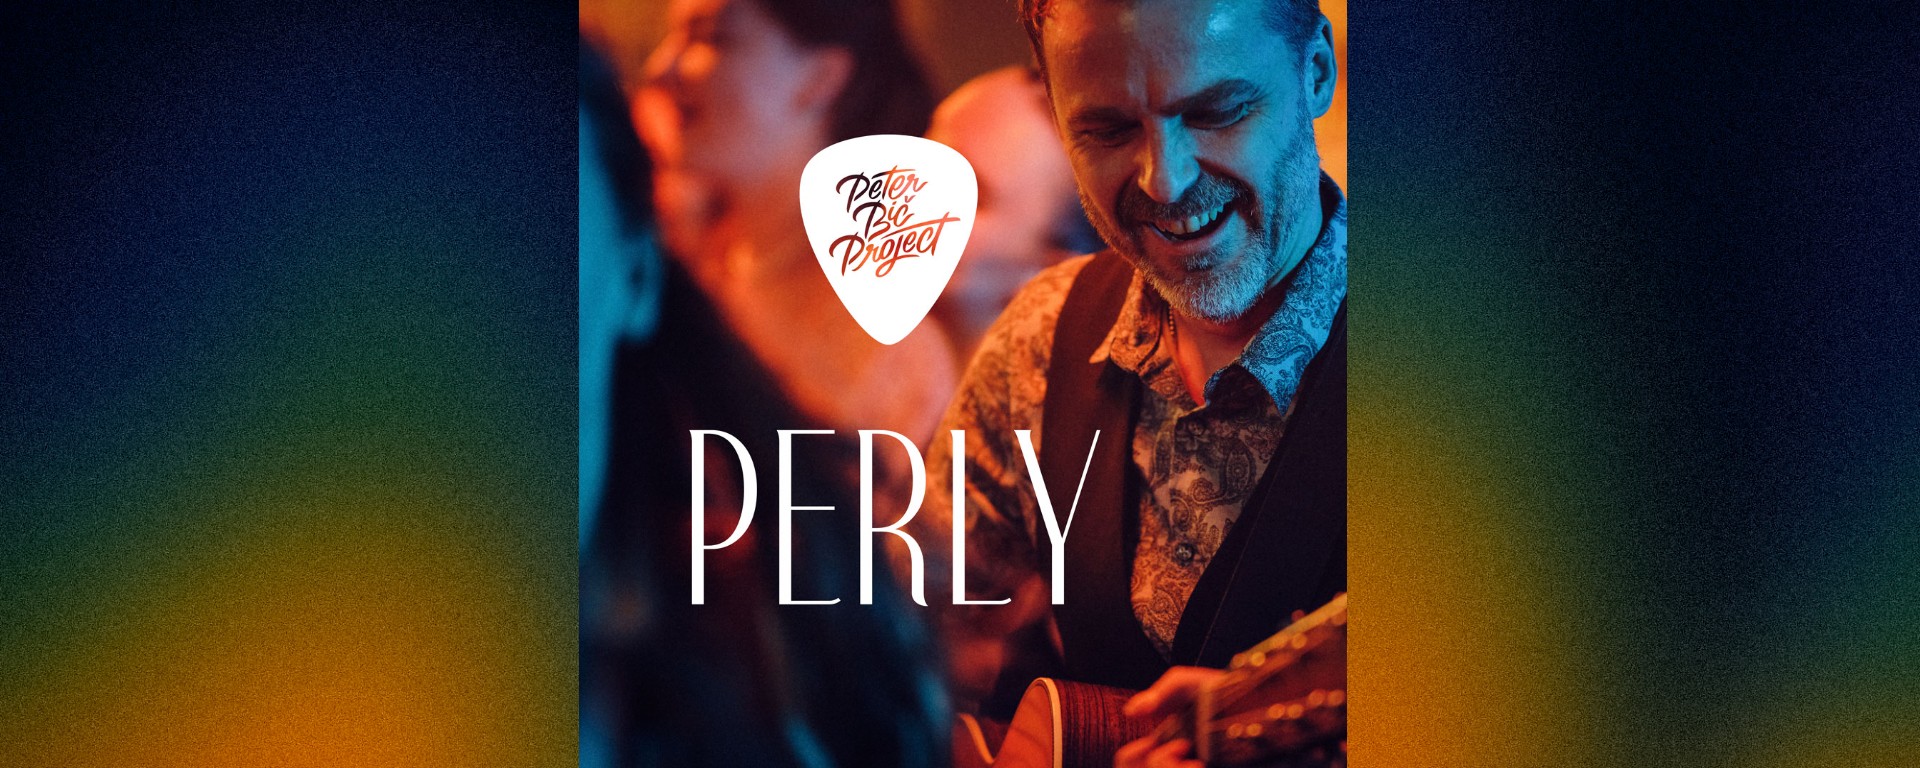 Skupina Peter Bič Project vydáva svoju novinku "Perly".